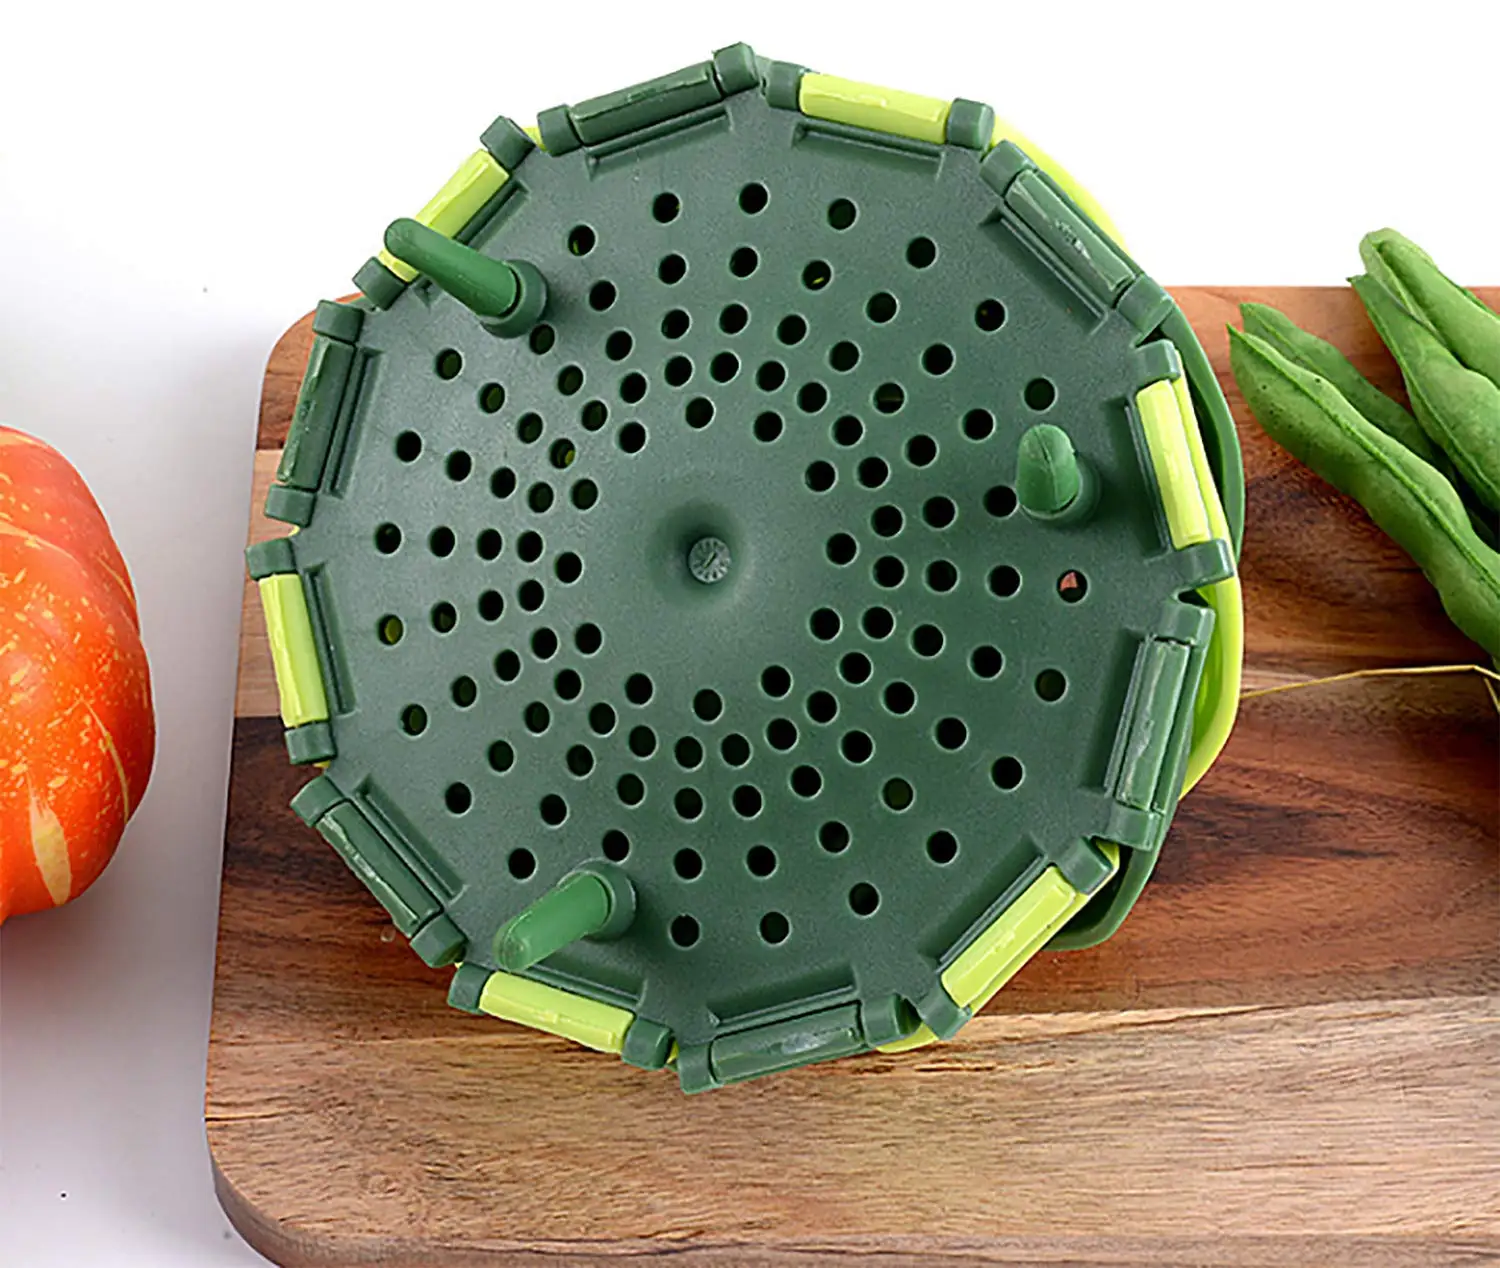 Vegetable Steamer Basket for Cooking Food Veggie Broccoli Meat Steamer Pot  Cooker Expandable Steel Steamer (5.5-9)